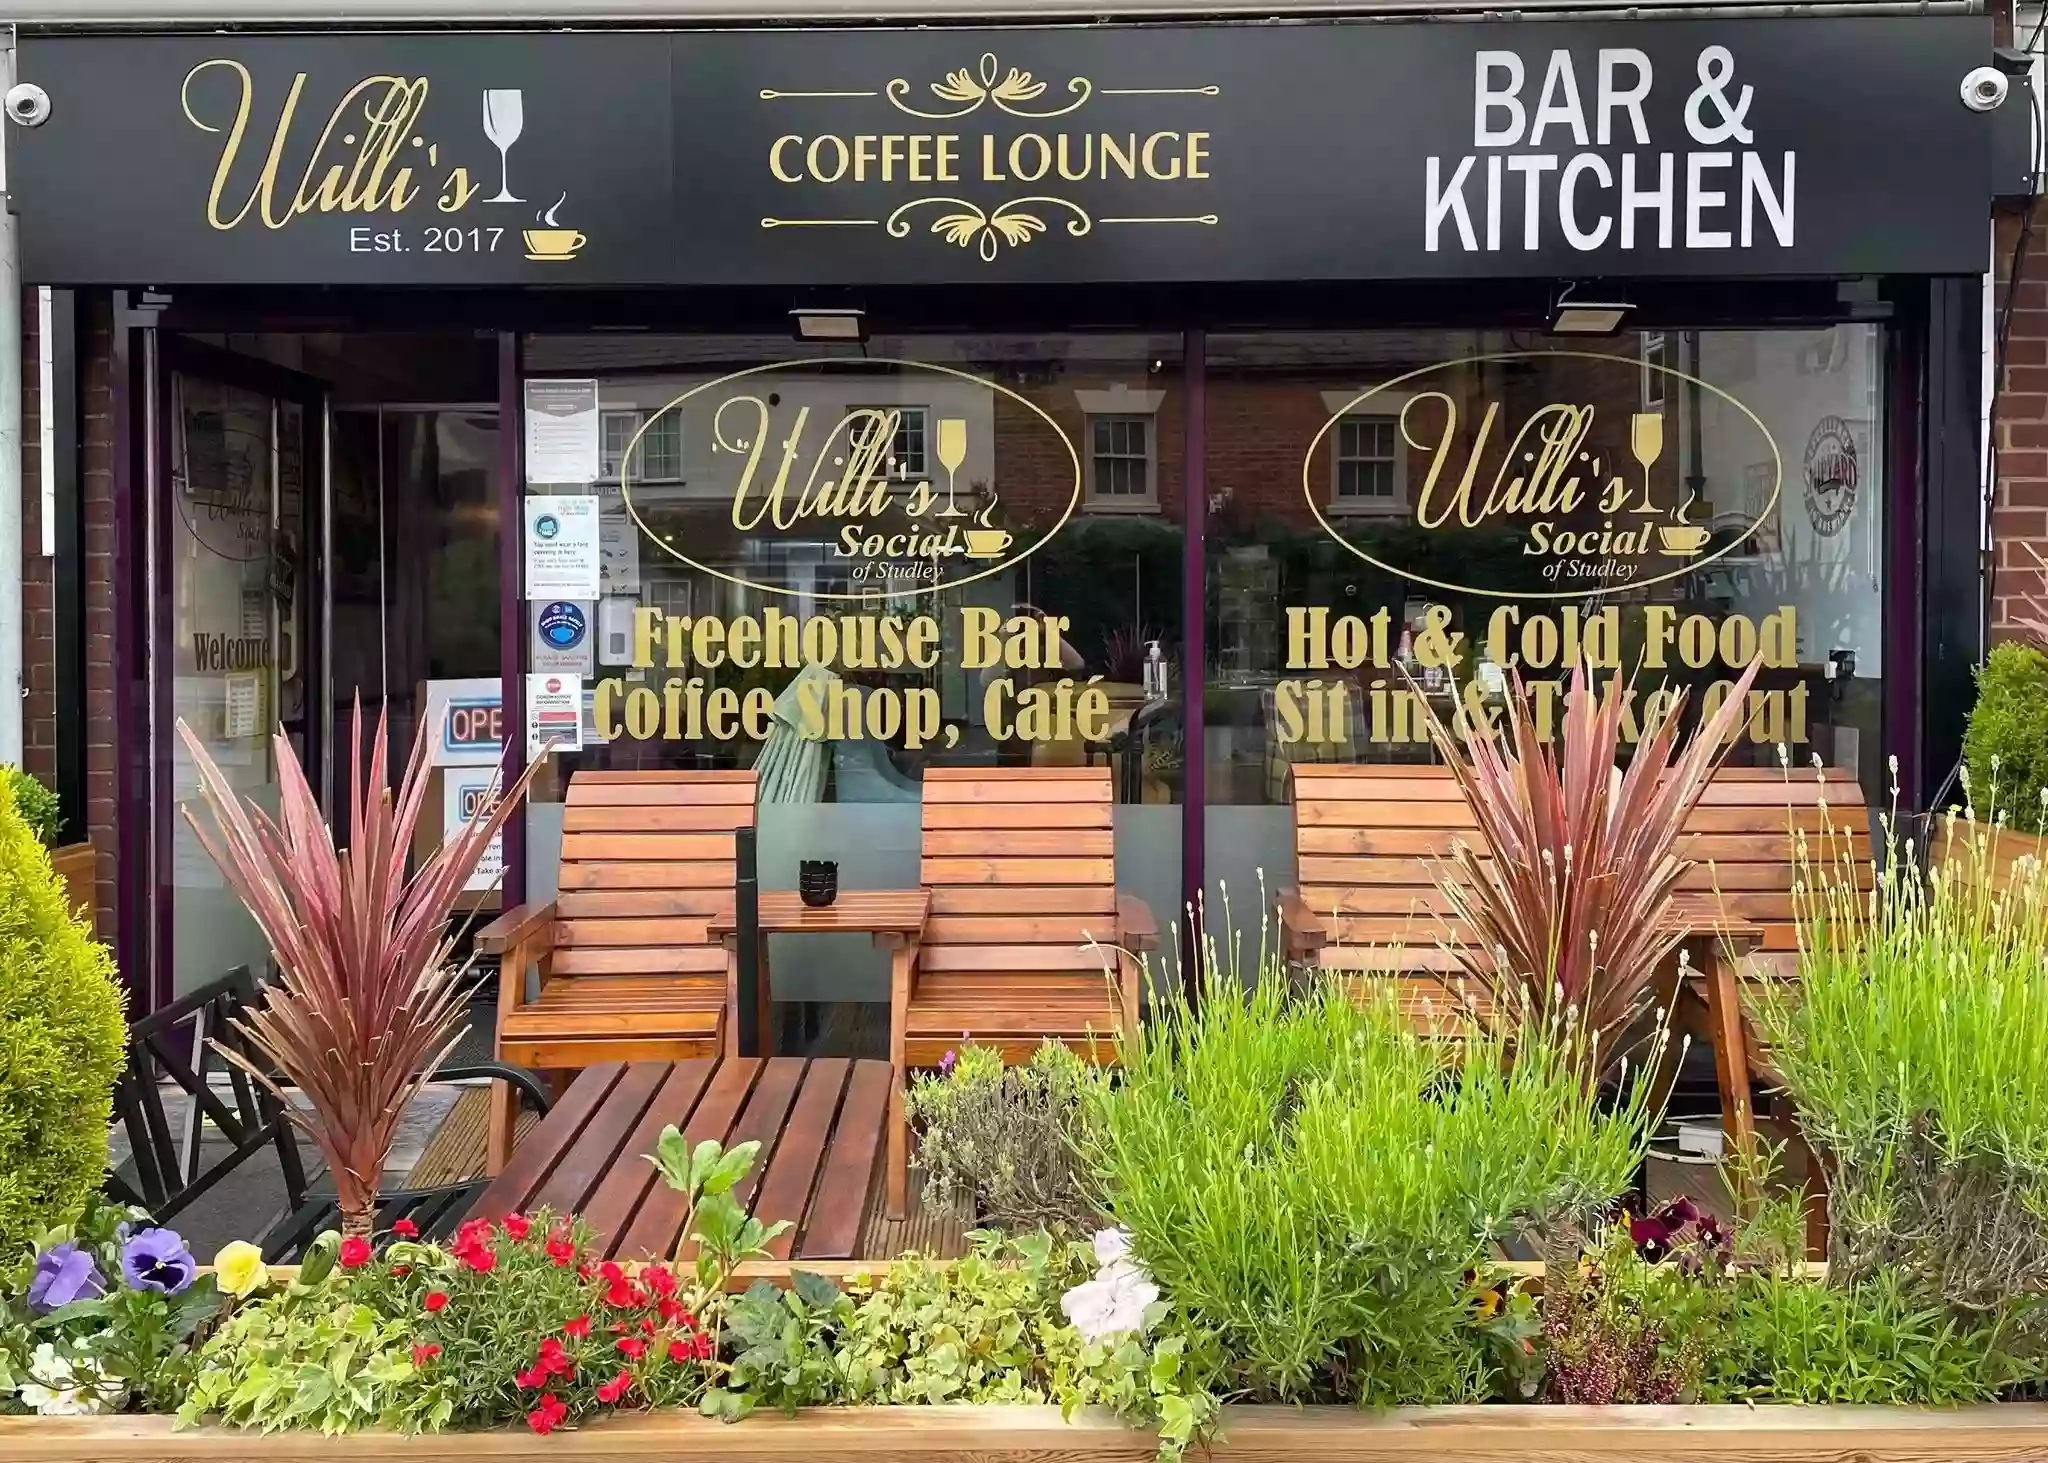 Willi's Coffee Shop, Bar & Kitchen